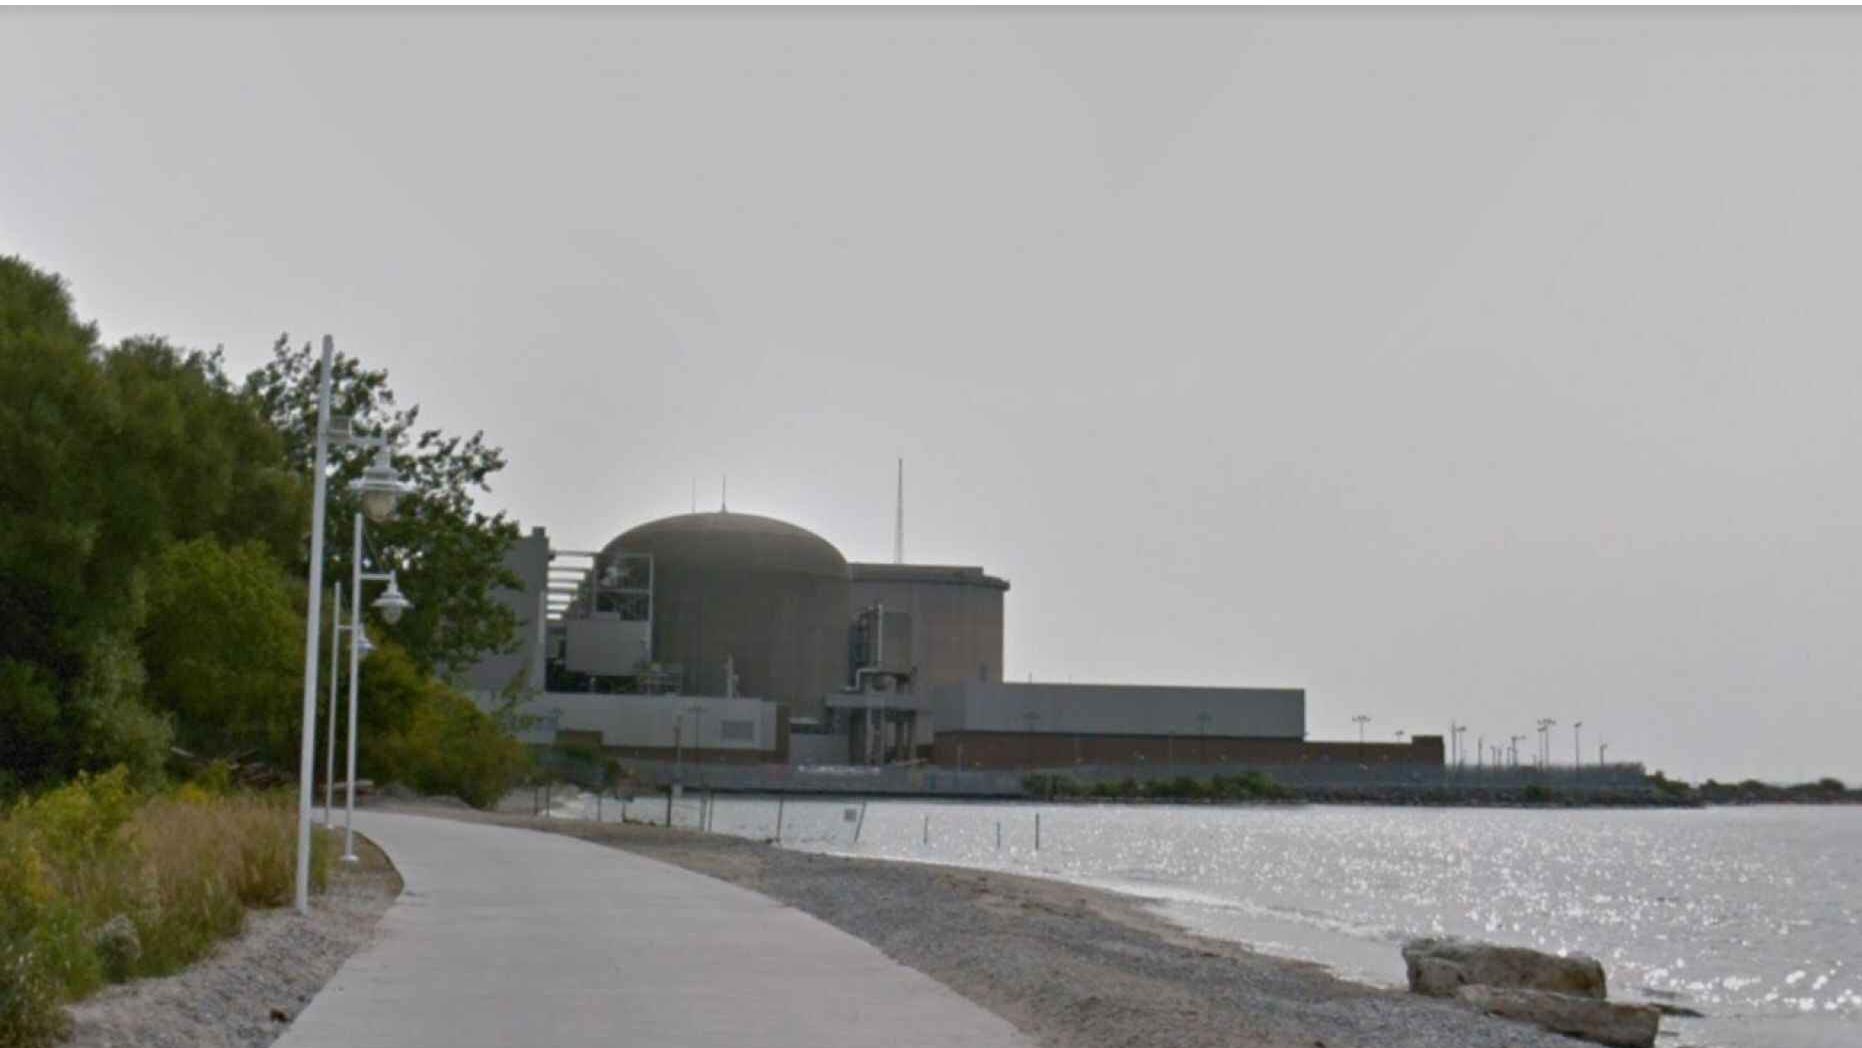 حالة ذعر كبير بين سكان تورنتو بسبب إنذار طوارئ صدر عن طريق "الخطأ" من محطة Pickering النووية